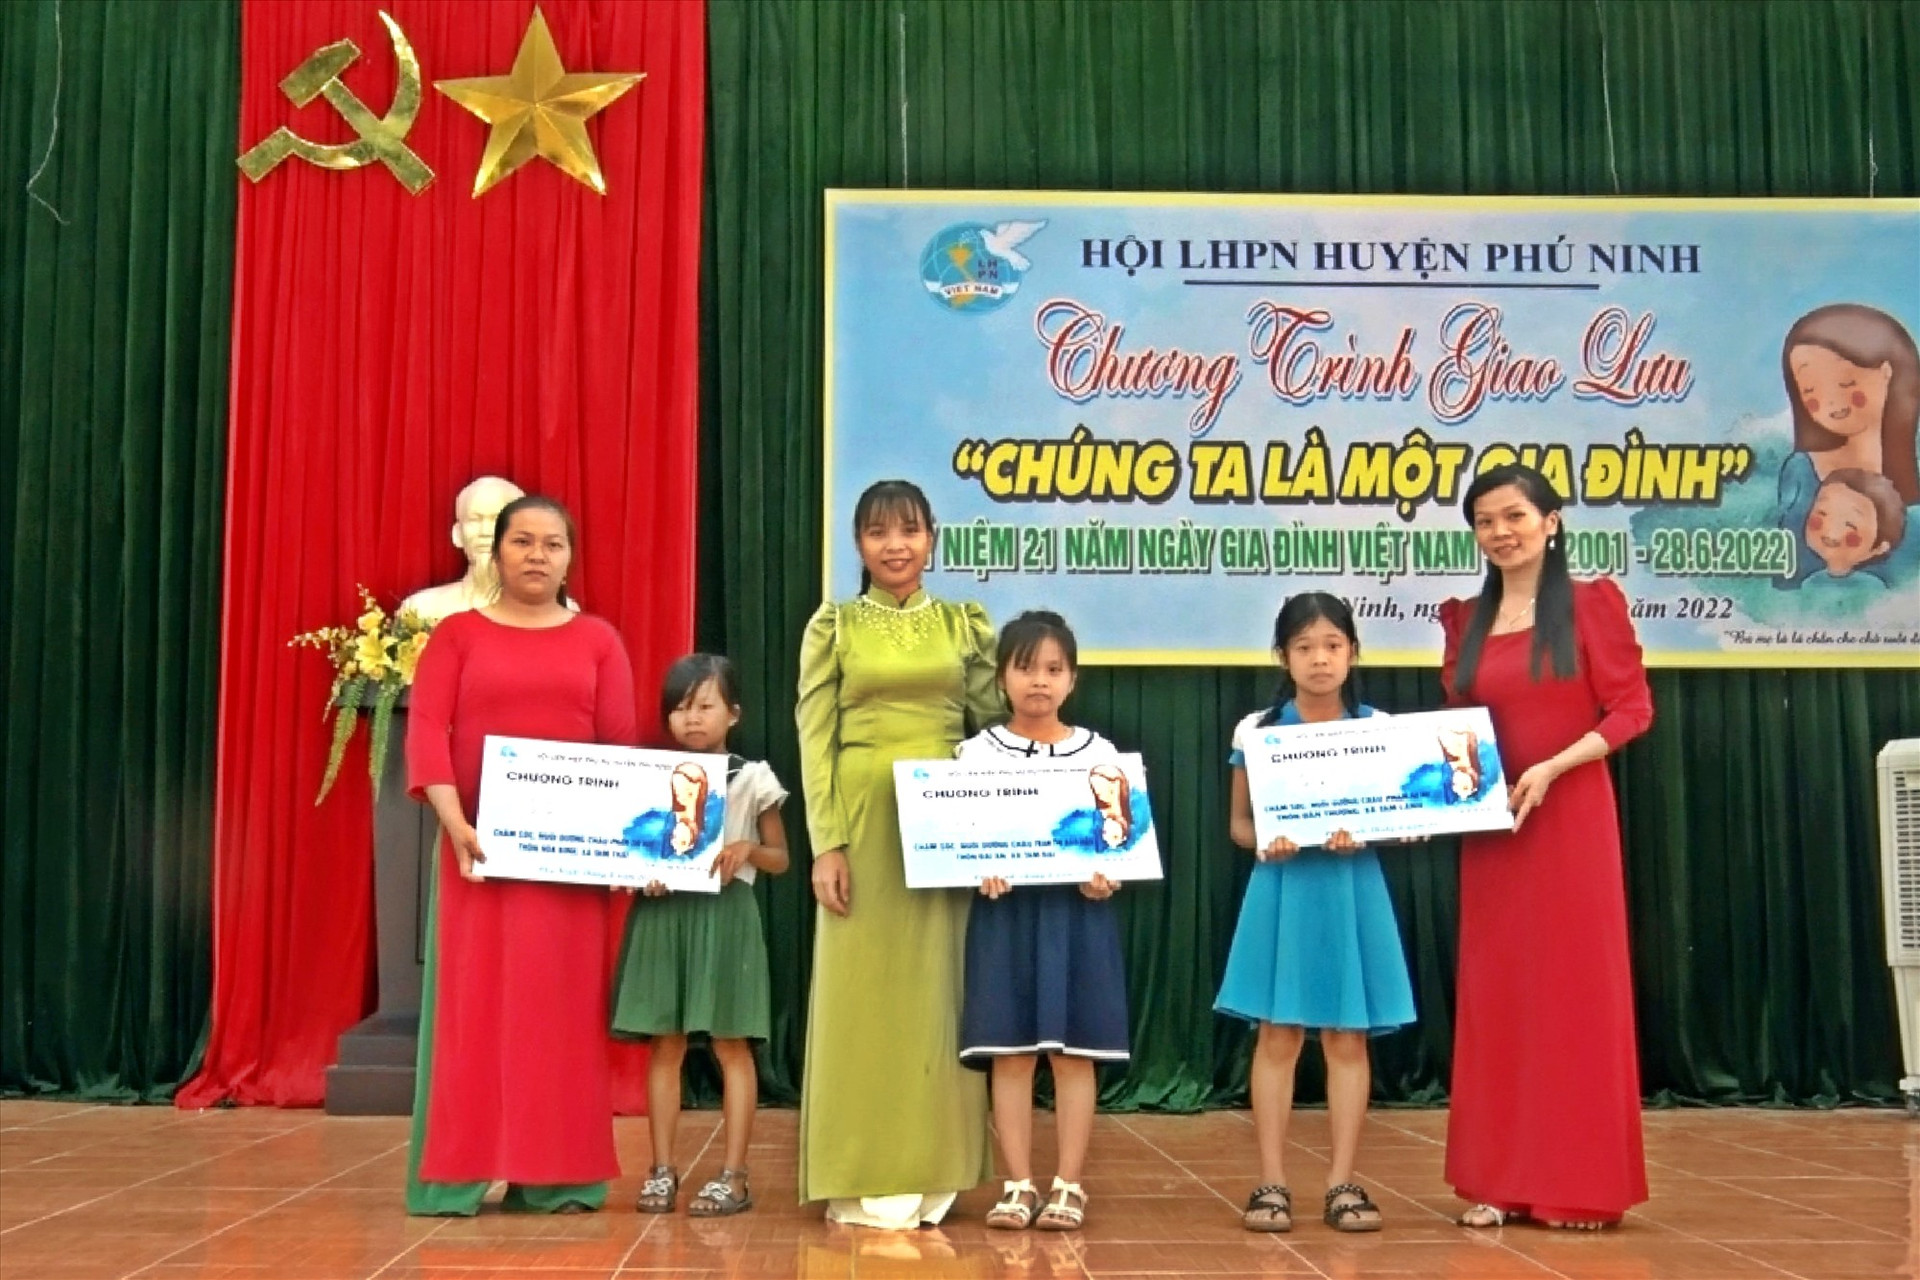 Đến nay, 30 cháu là trẻ mồ côi trên địa bàn huyện Phú Ninh đã được nhận đỡ đầu. Ảnh: Đ.T